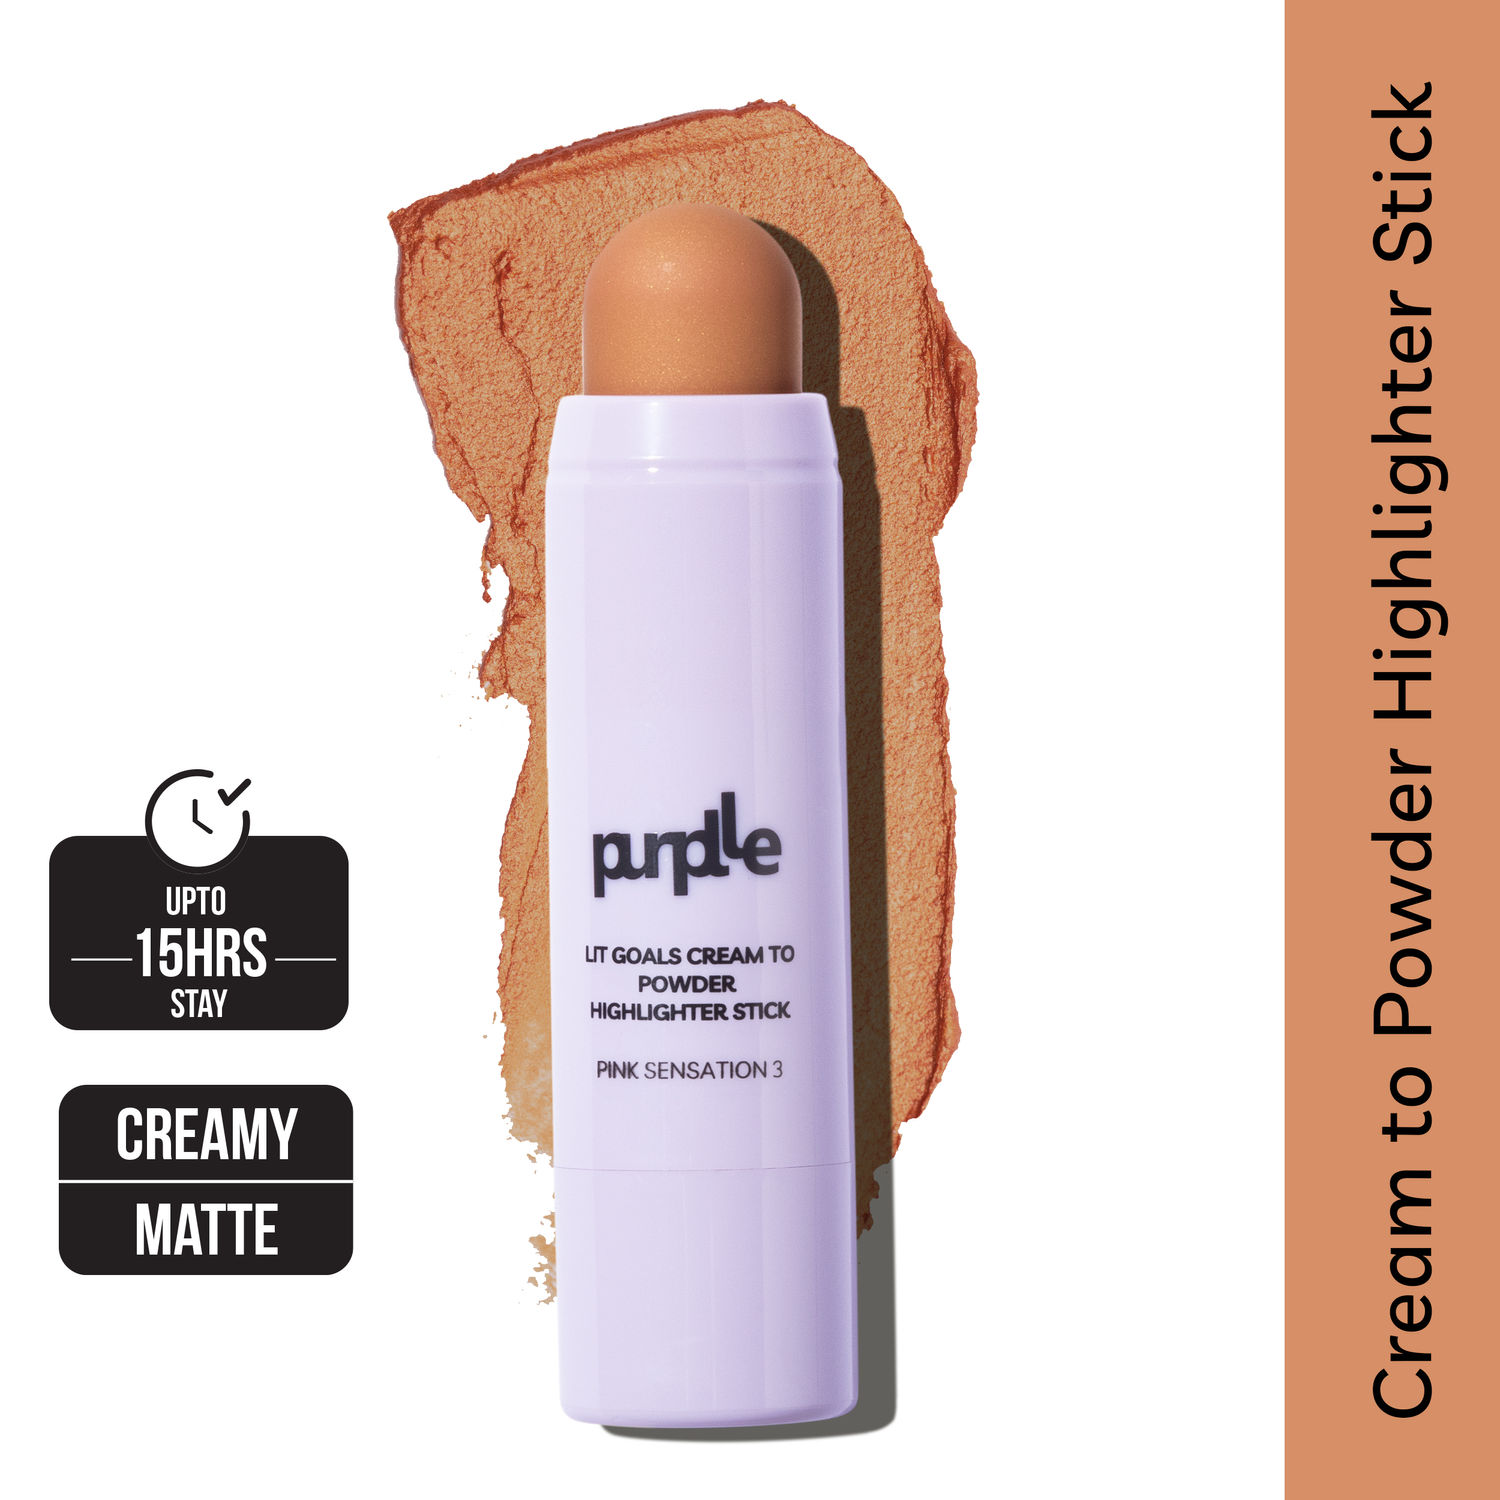 Purplle Lit Goals Cream to Powder Highlighter Stick Pink Sensation 3